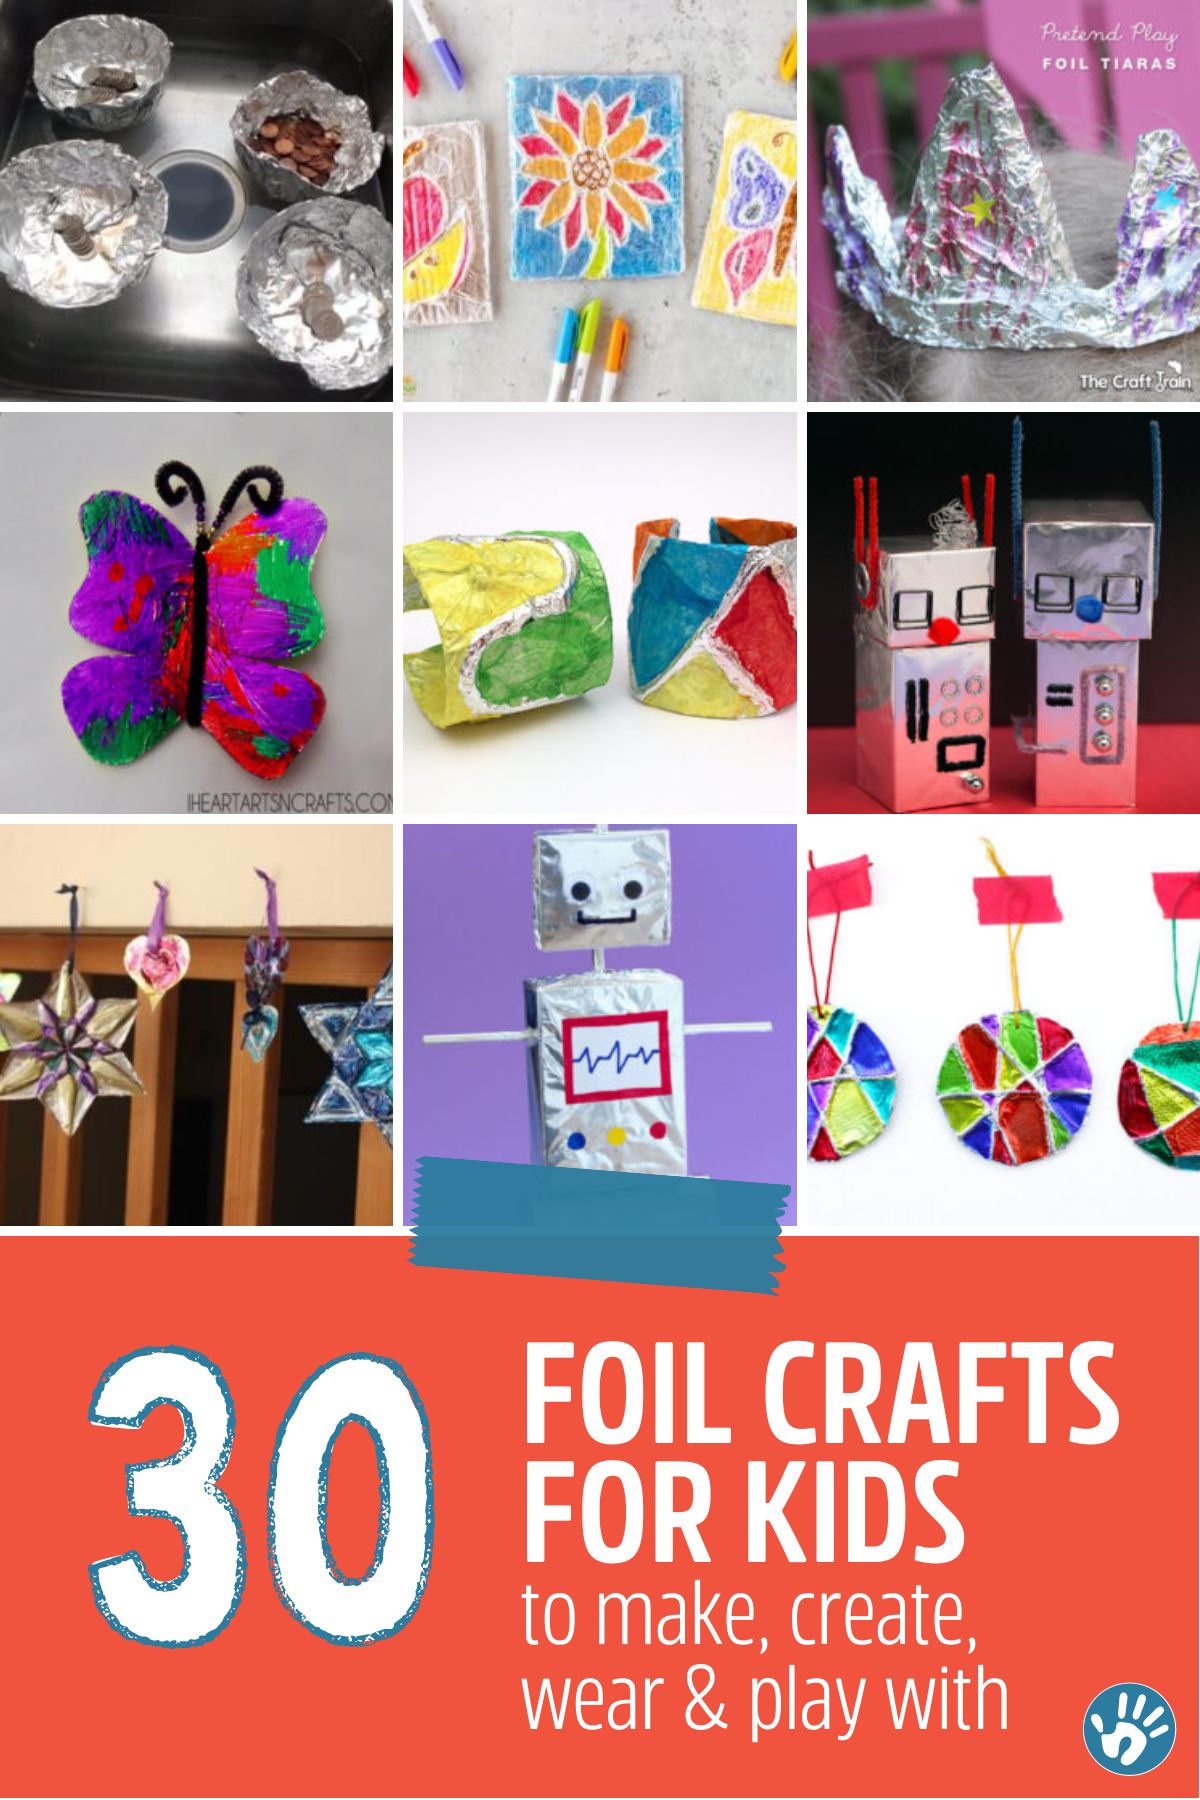 https://handsonaswegrow.com/wp-content/uploads/2022/06/30_foil_crafts_for_kids_1200x1800_feature.jpg